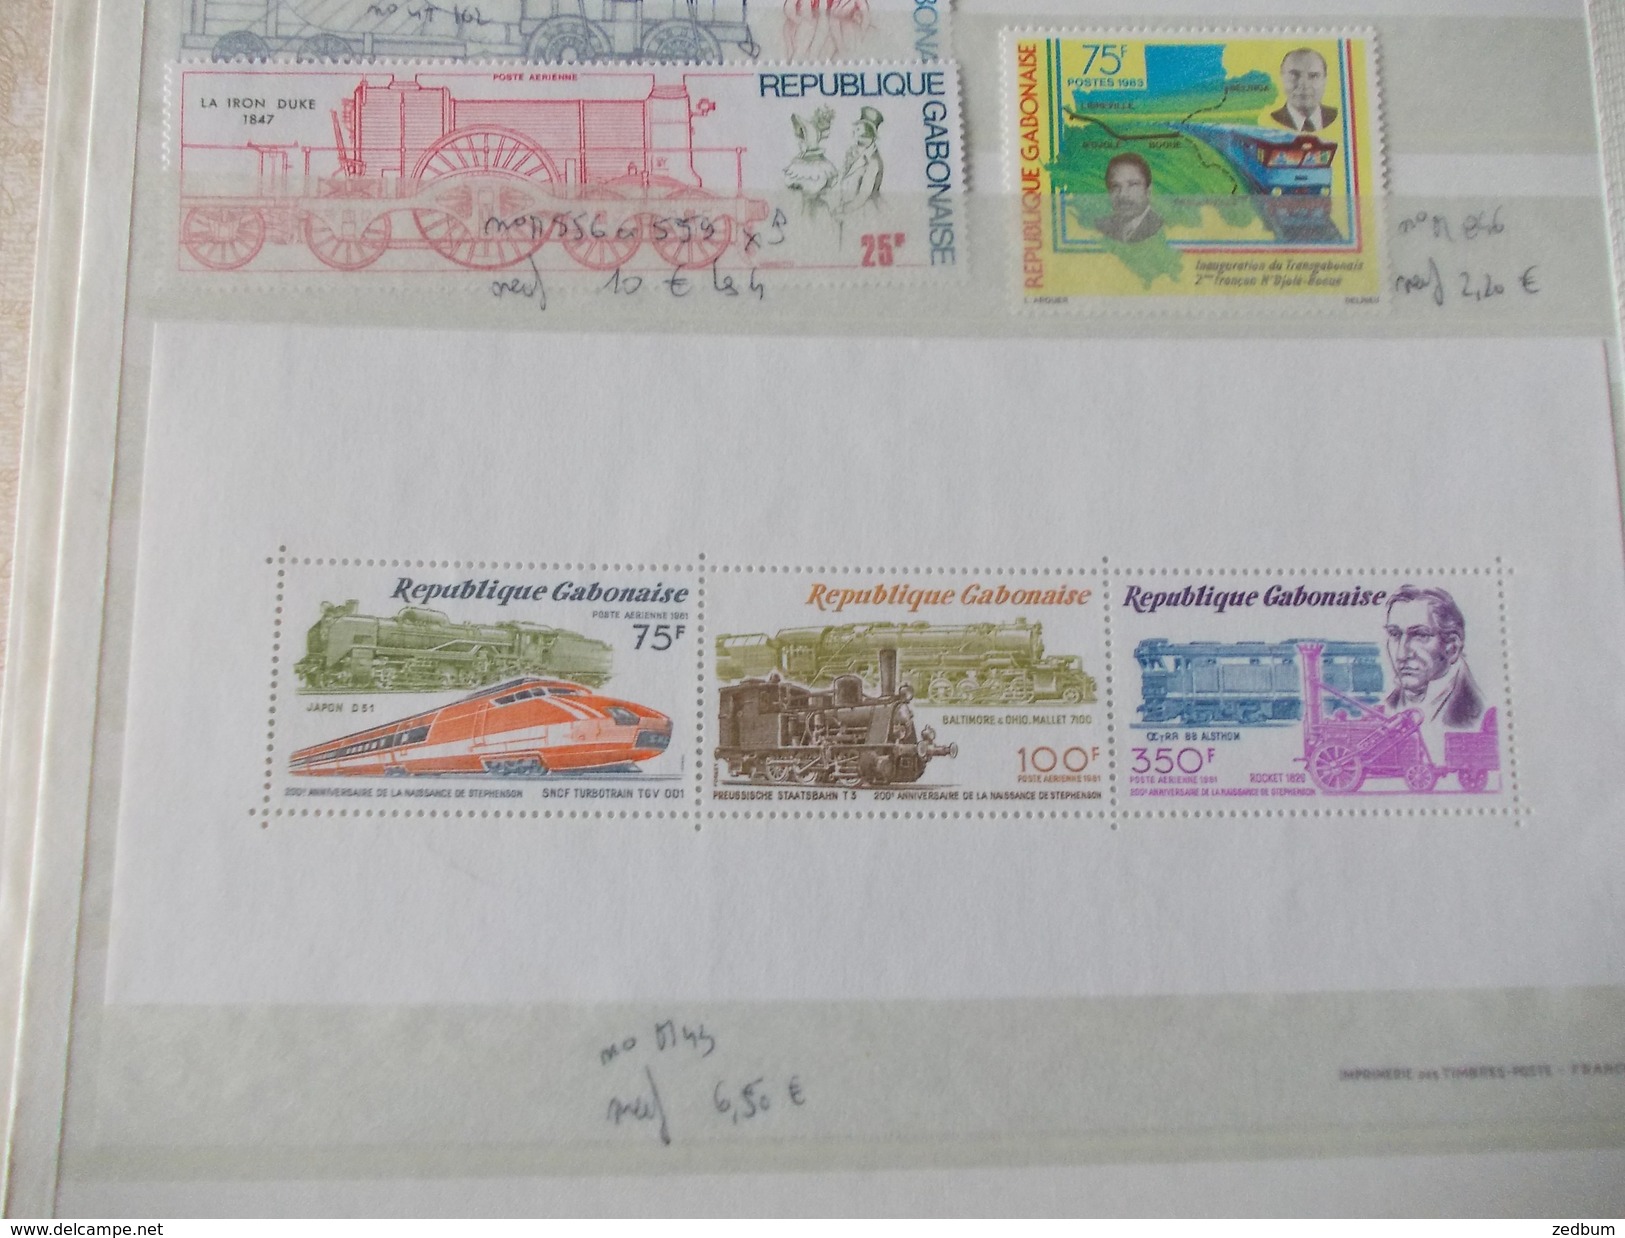 ALBUM 4 collection de timbres avec pour thème le chemin de fer train de tout pays valeur 547.25 &euro;